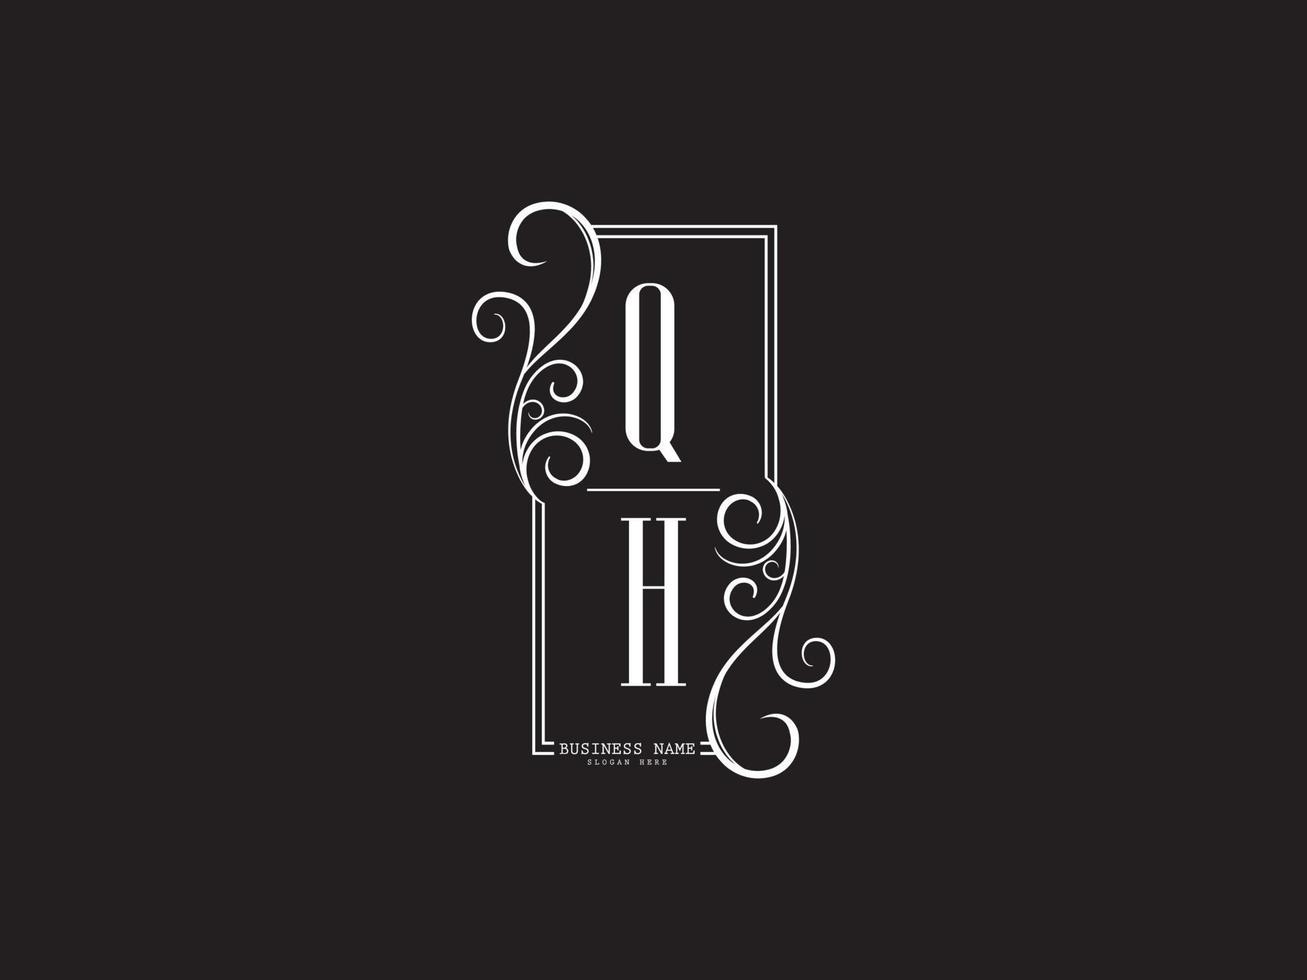 qh, qh monogramme de logo de lettres de luxe abstraites vecteur